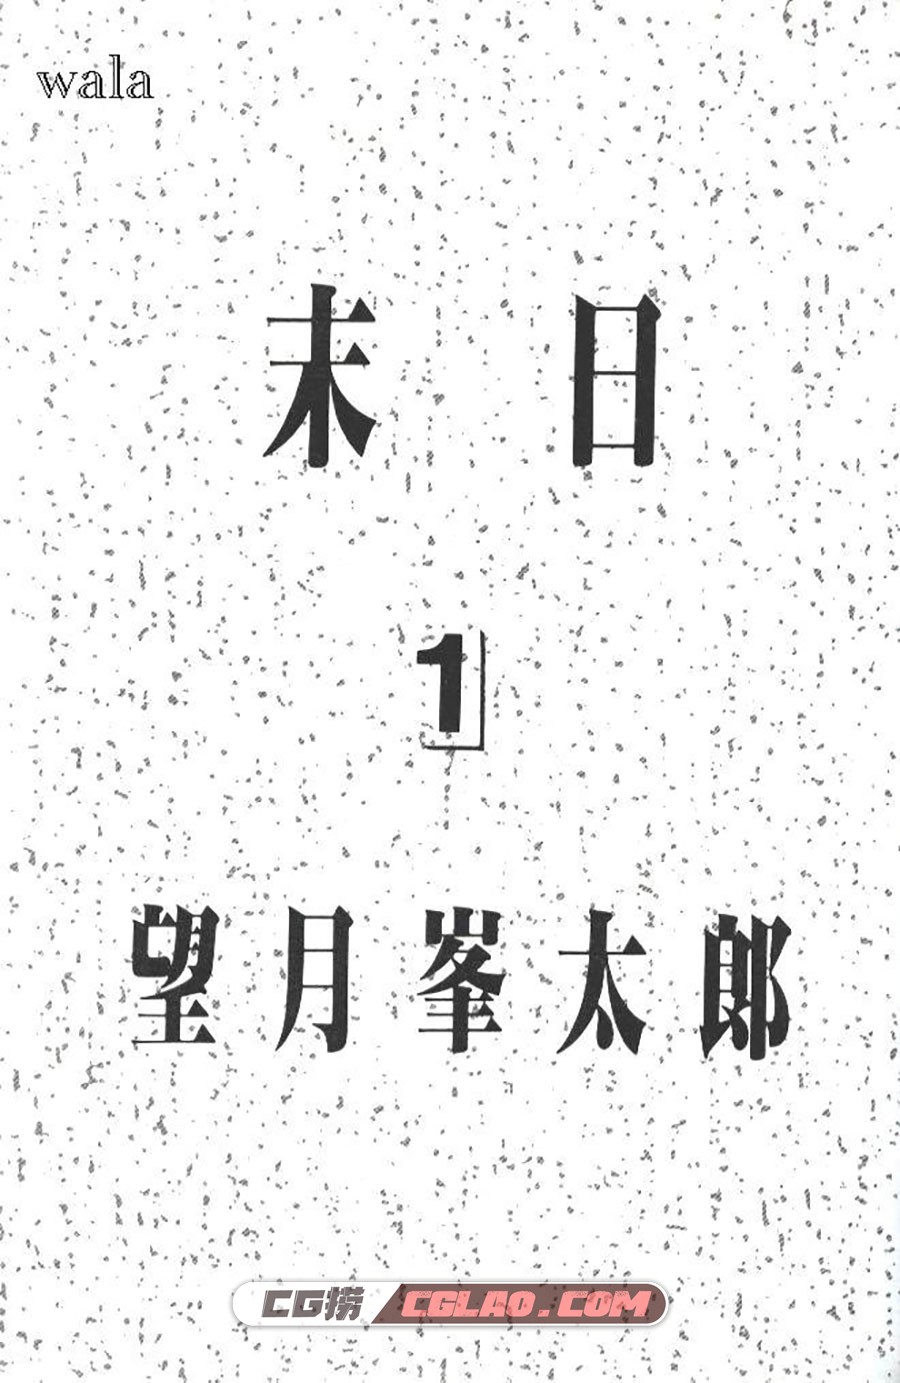 末日 望月峰太郎 1-10卷 漫画完结全集下载 百度网盘,1-(2).jpg